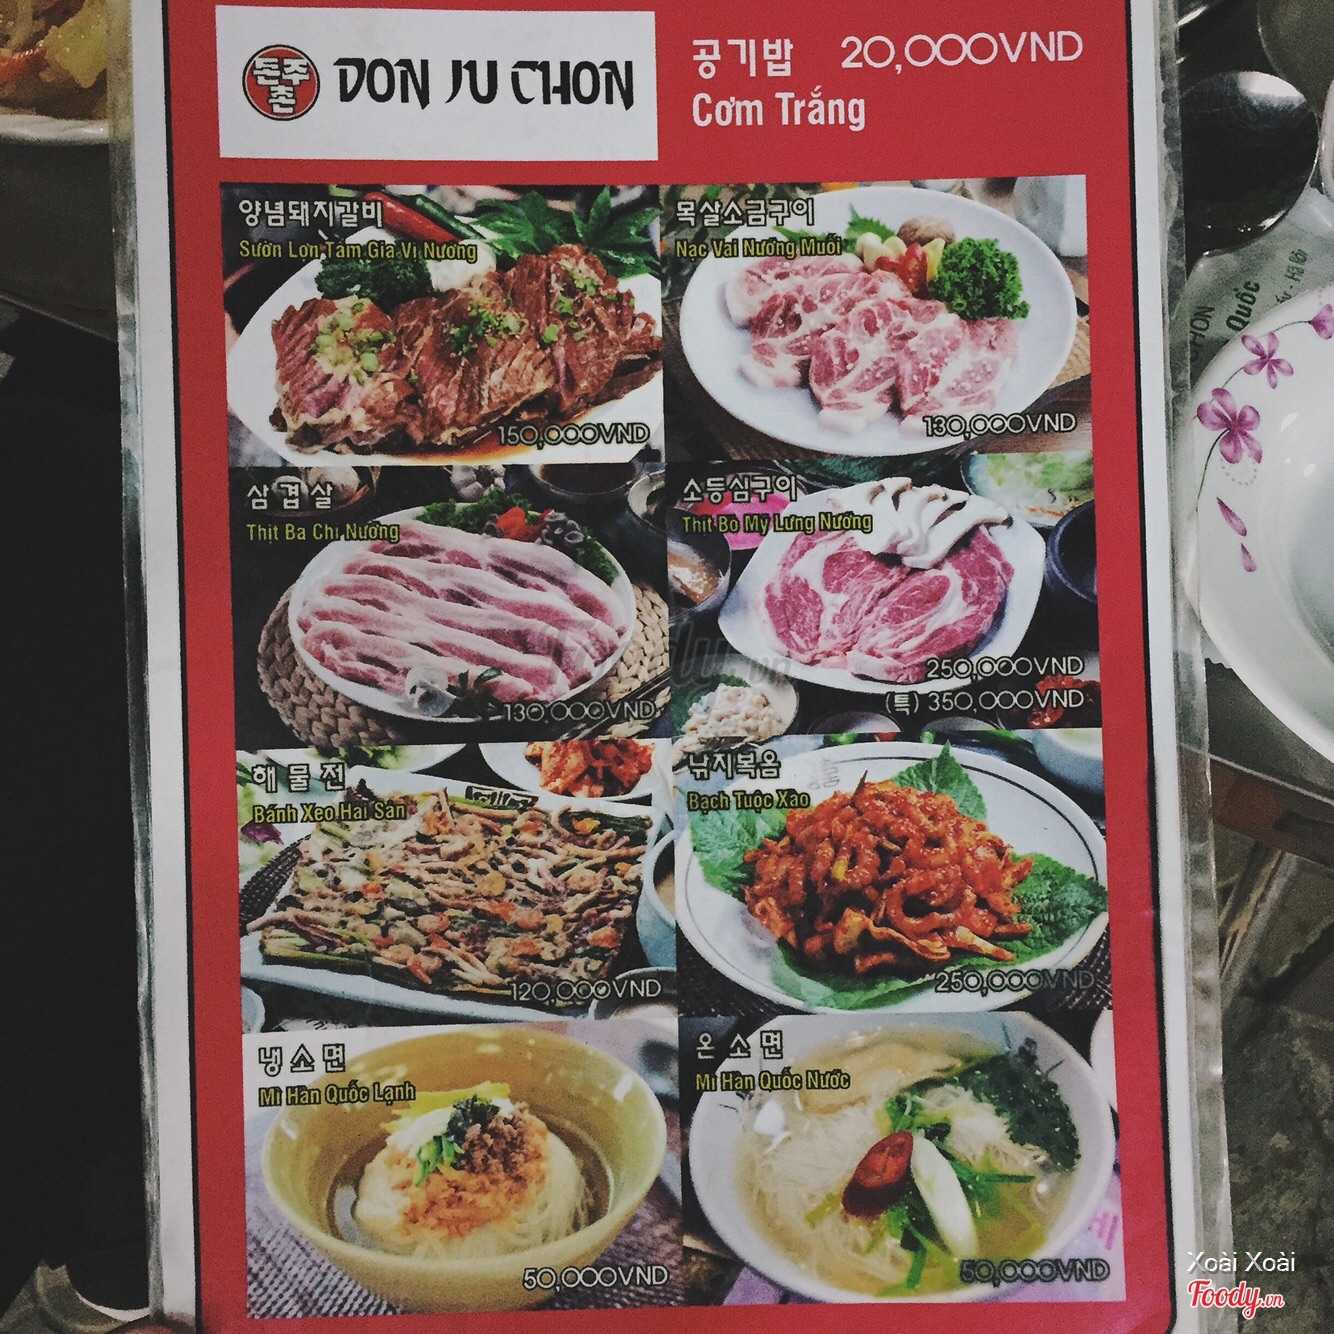 Don Ju Chon - Nướng Bình Dân Hàn Quốc Ở Quận Cầu Giấy, Hà Nội | Menu Thực  Đơn & Giá Cả | Don Ju Chon - Nướng Bình Dân Hàn Quốc | Foody.Vn